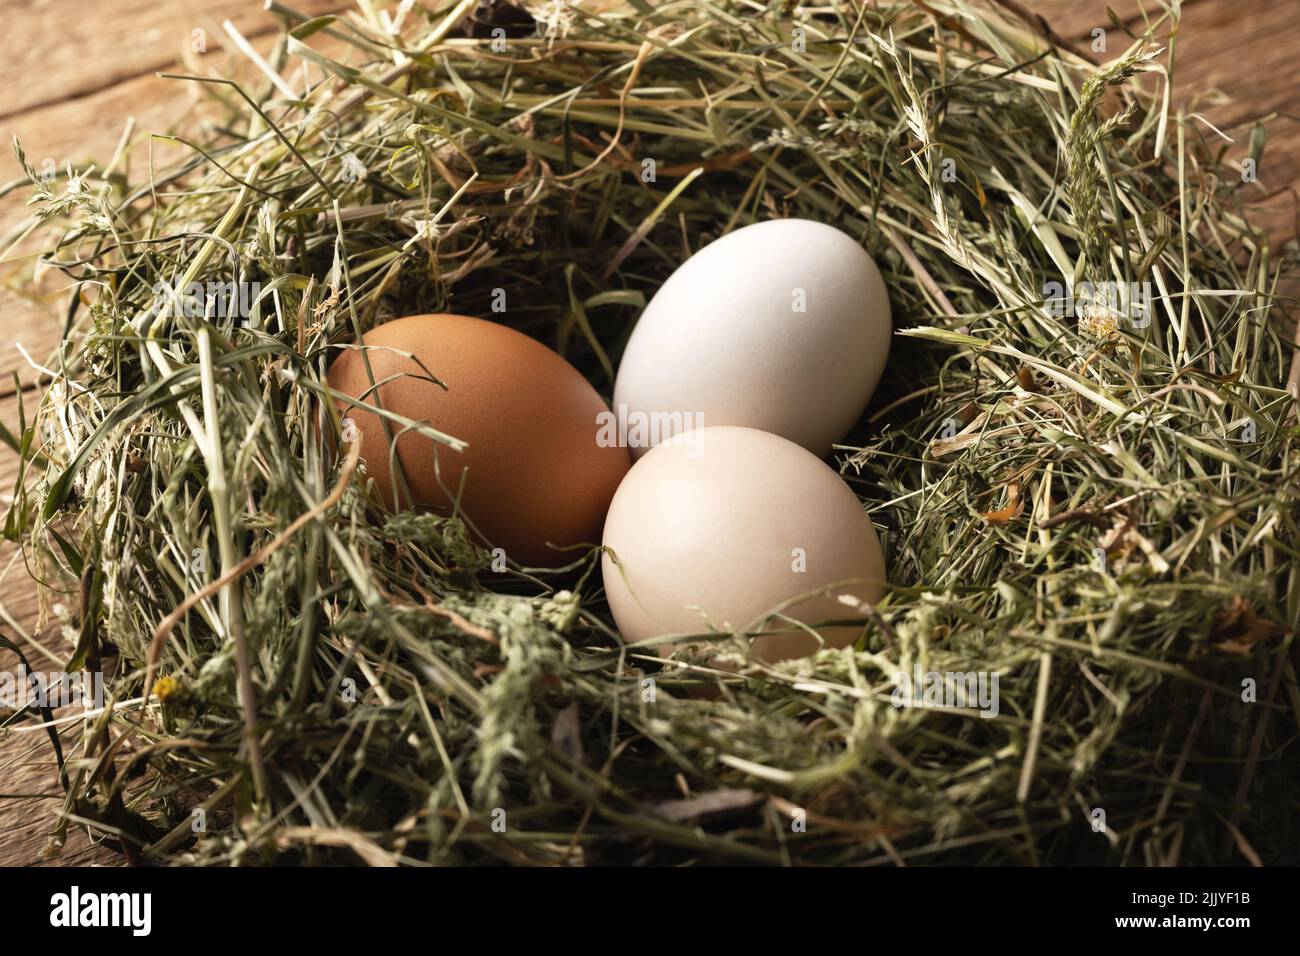 Huevos de pollo orgánicos en nido del primer plano de heno seco. Fotografía de alimentos Foto de stock